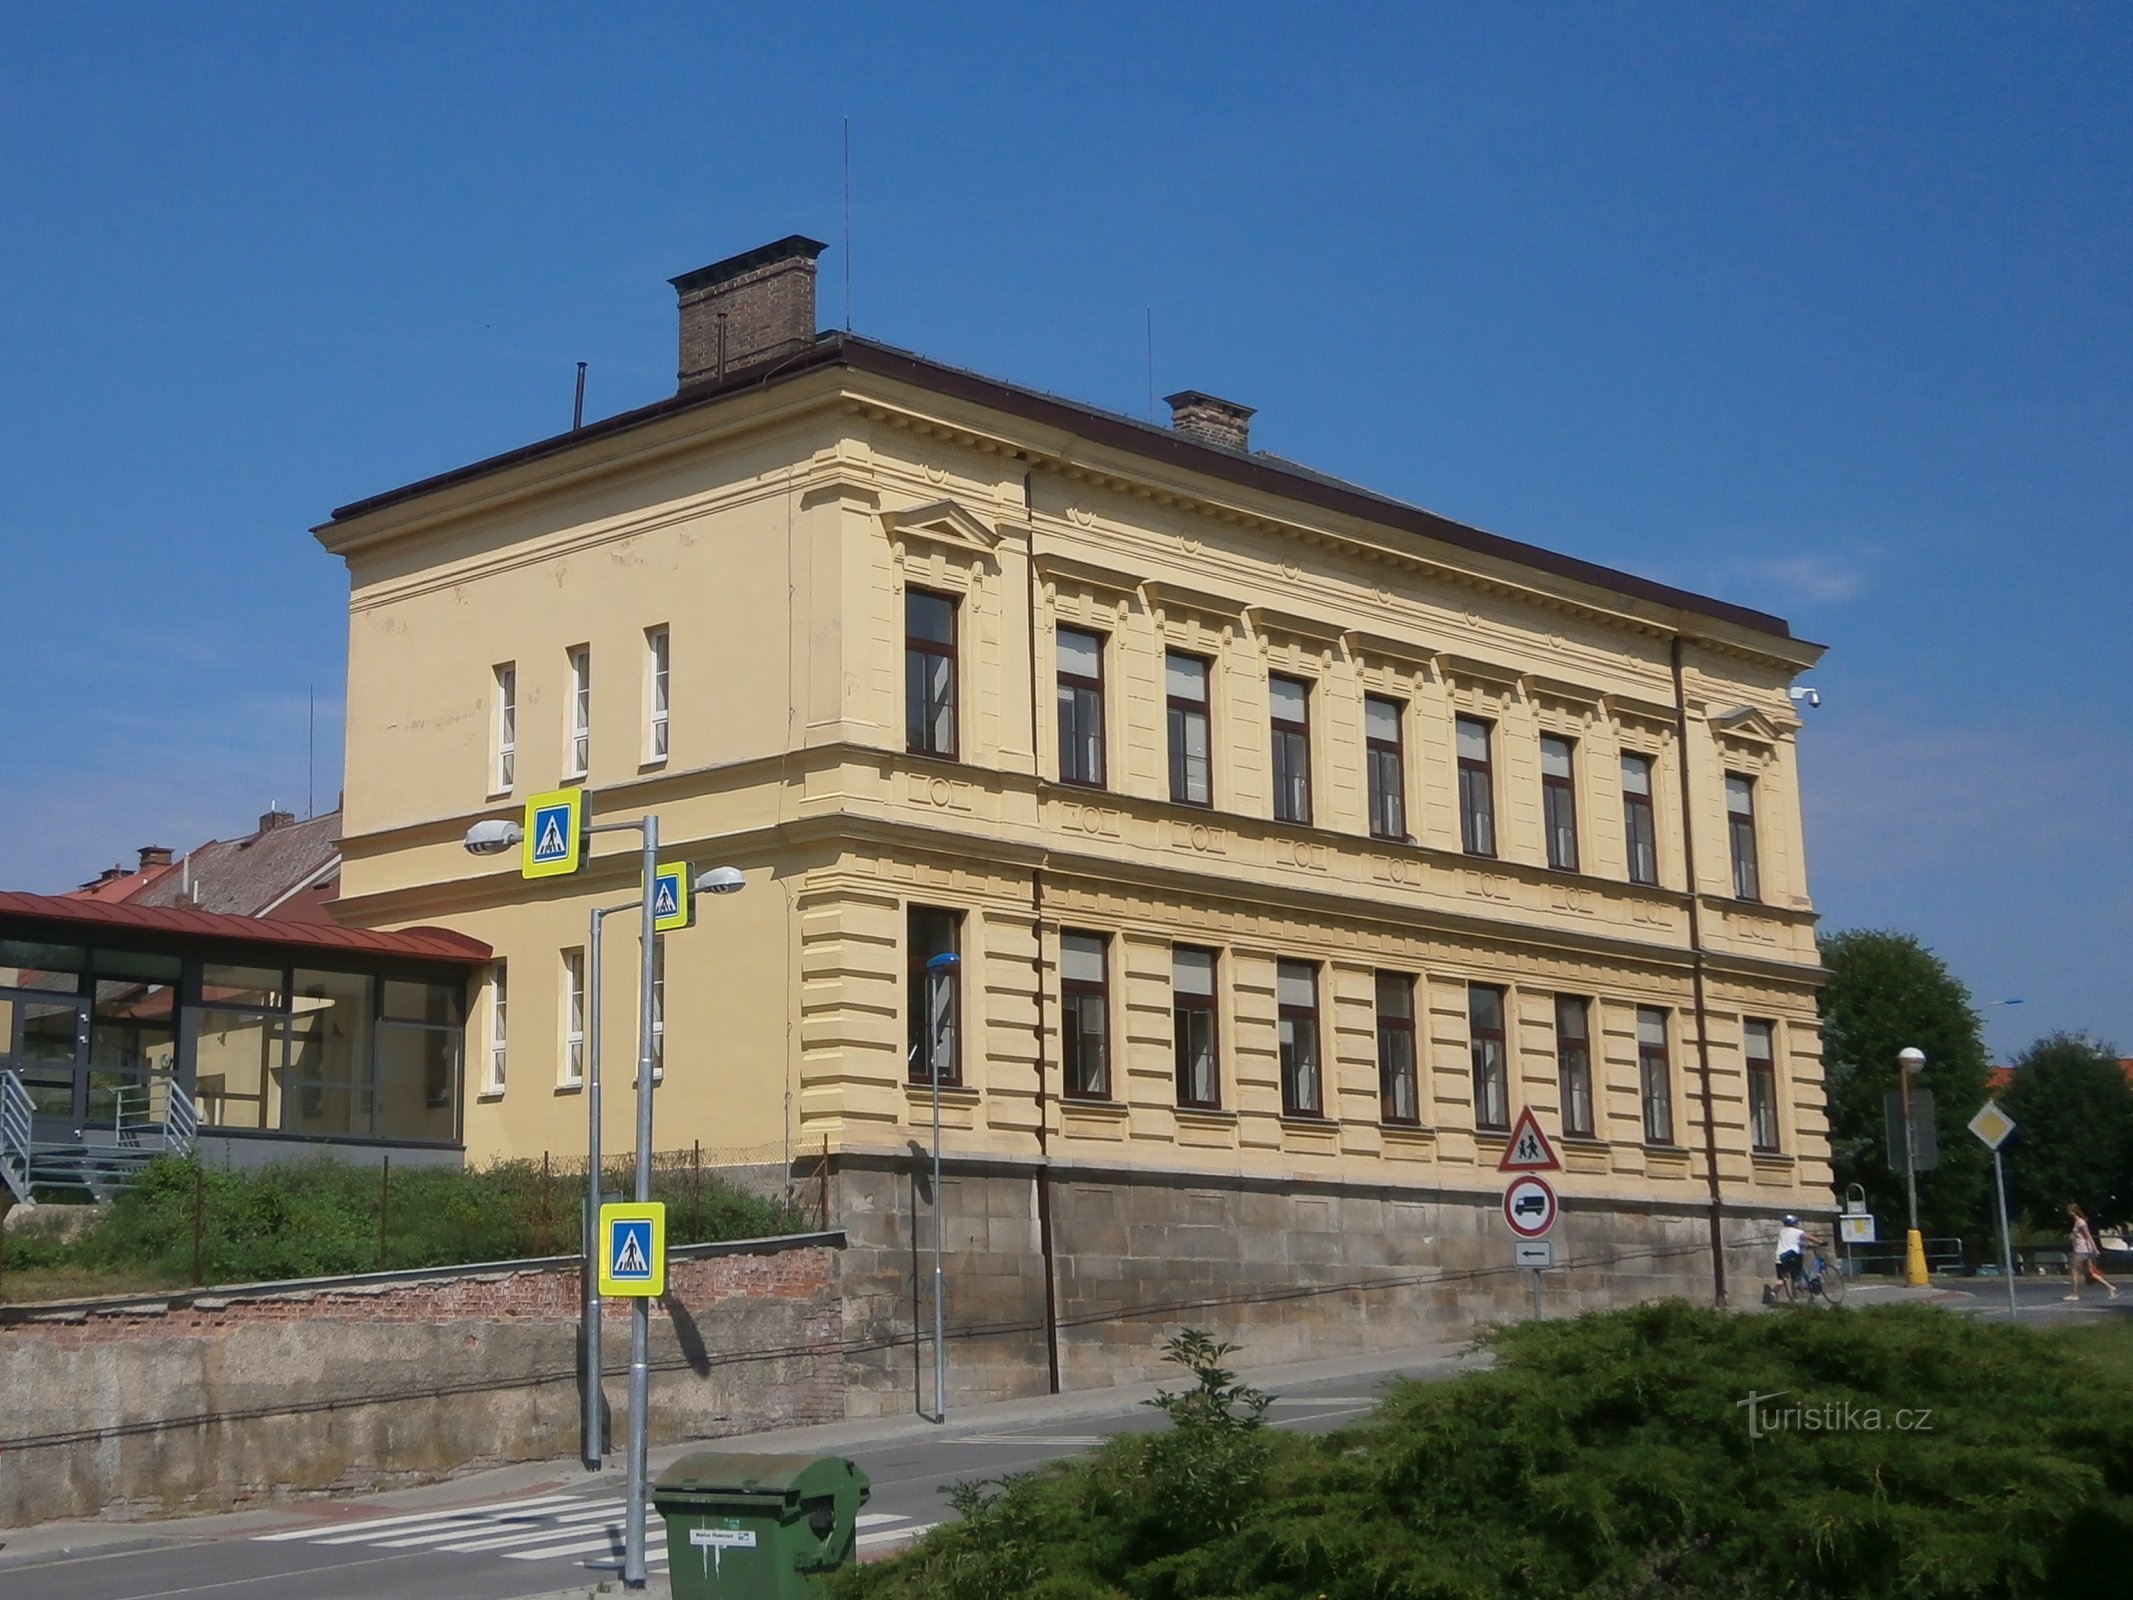 Former town school No. 43-44 (Česká Skalice, 5.7.2017 July XNUMX)